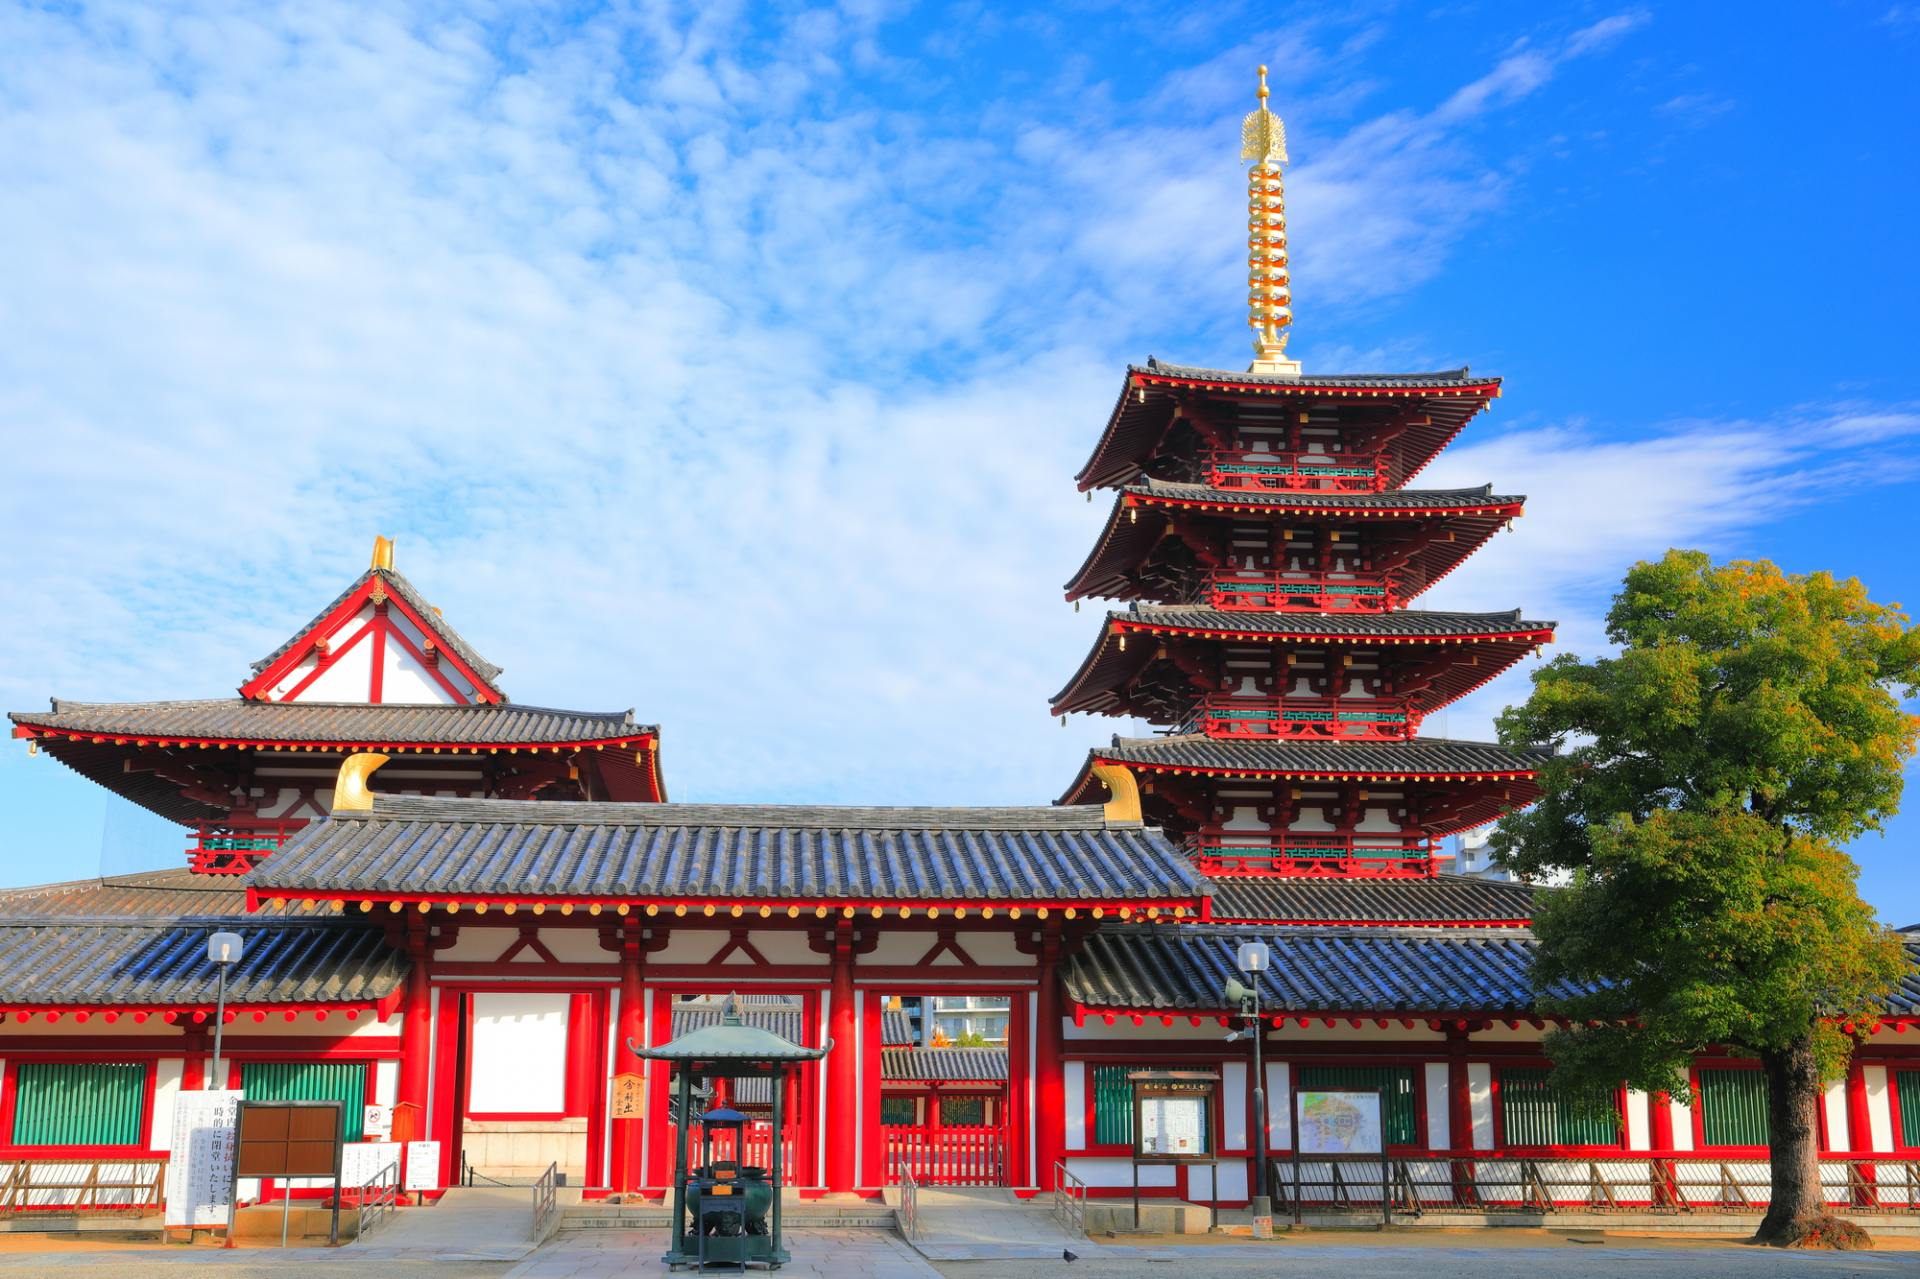 四天王寺の観光ガイド】日本最古のお寺で文化と歴史を感じよう | GOOD 